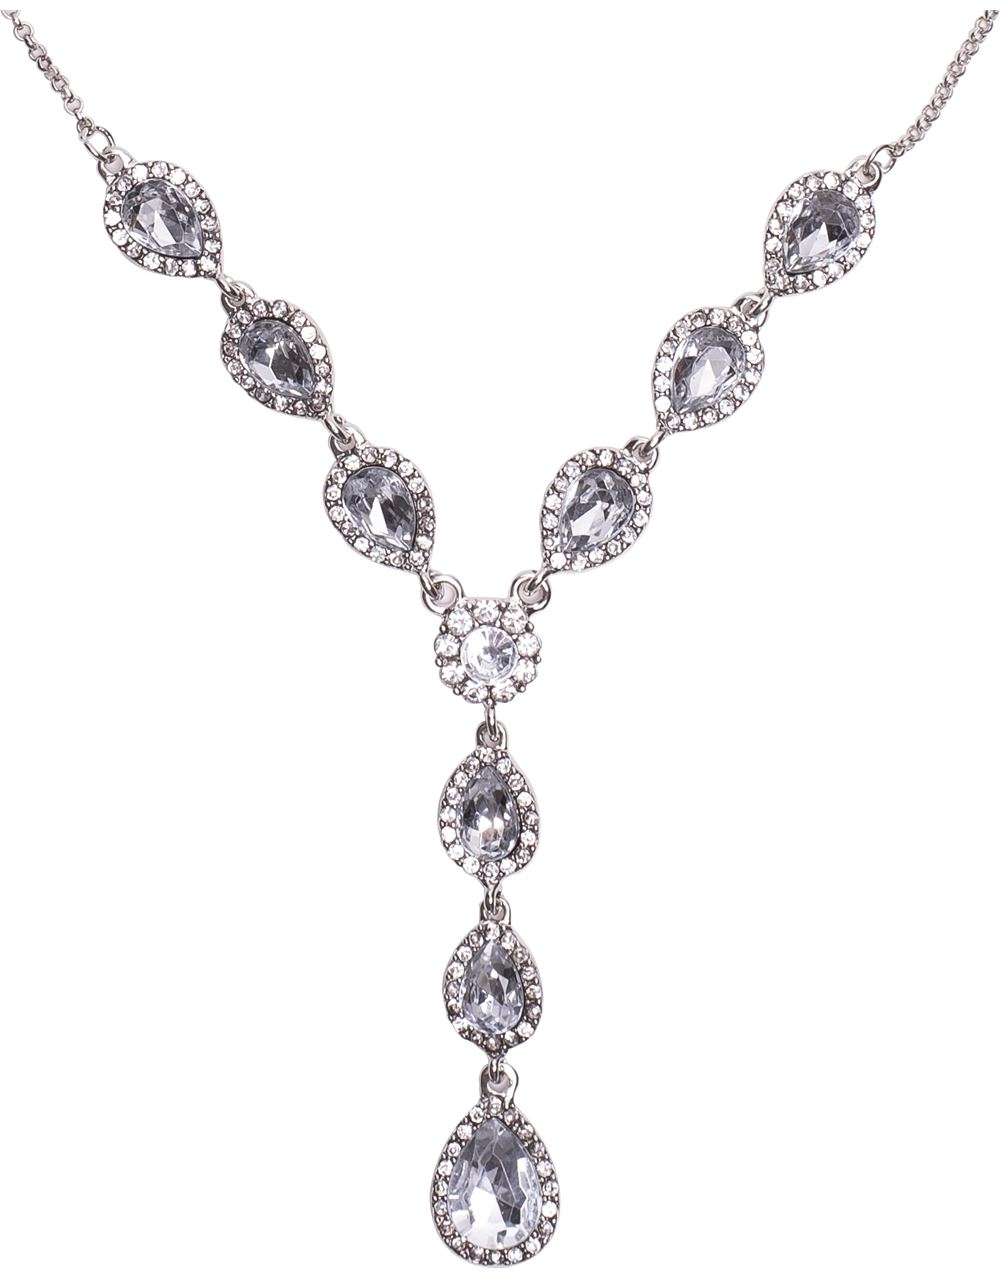 Sparkling Pendant Necklace